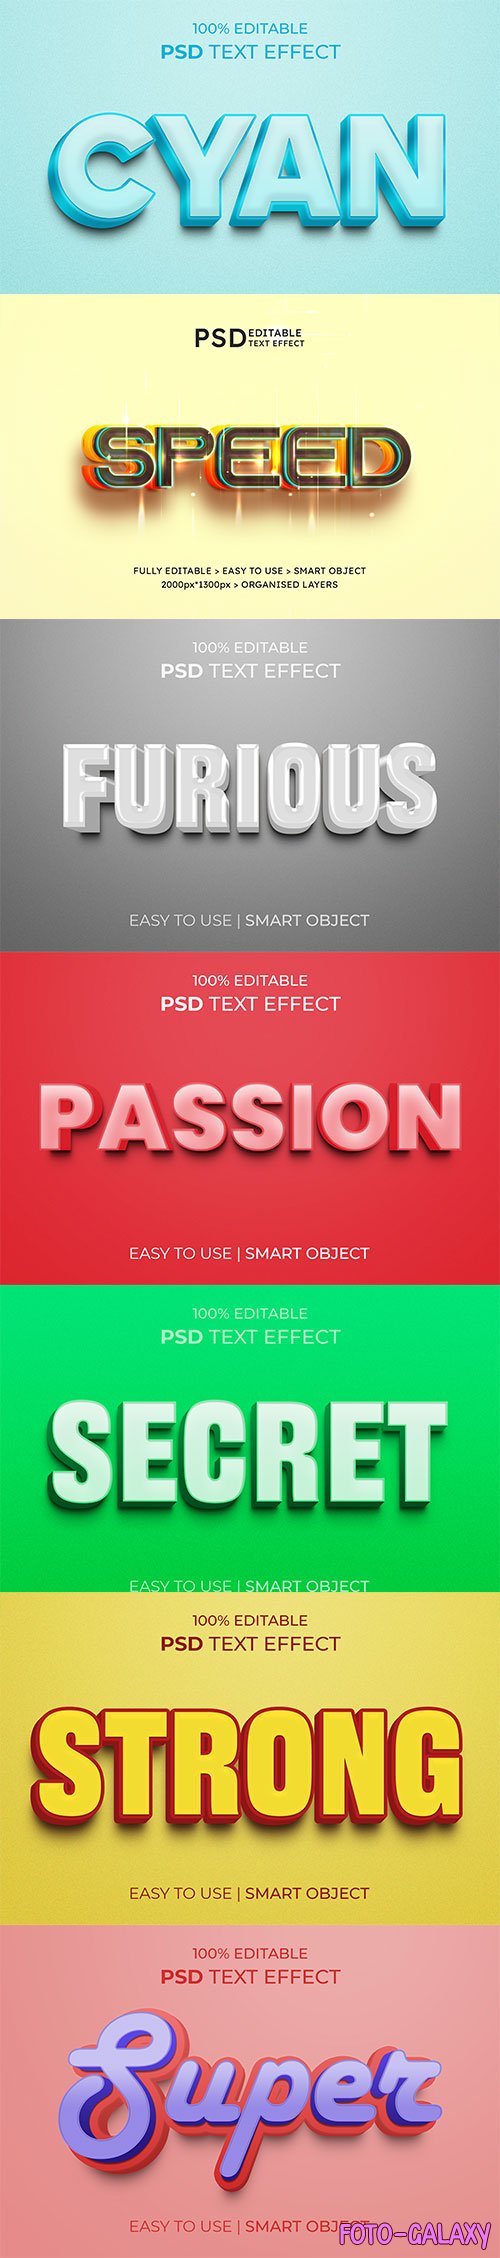 Psd text effect set vol 596